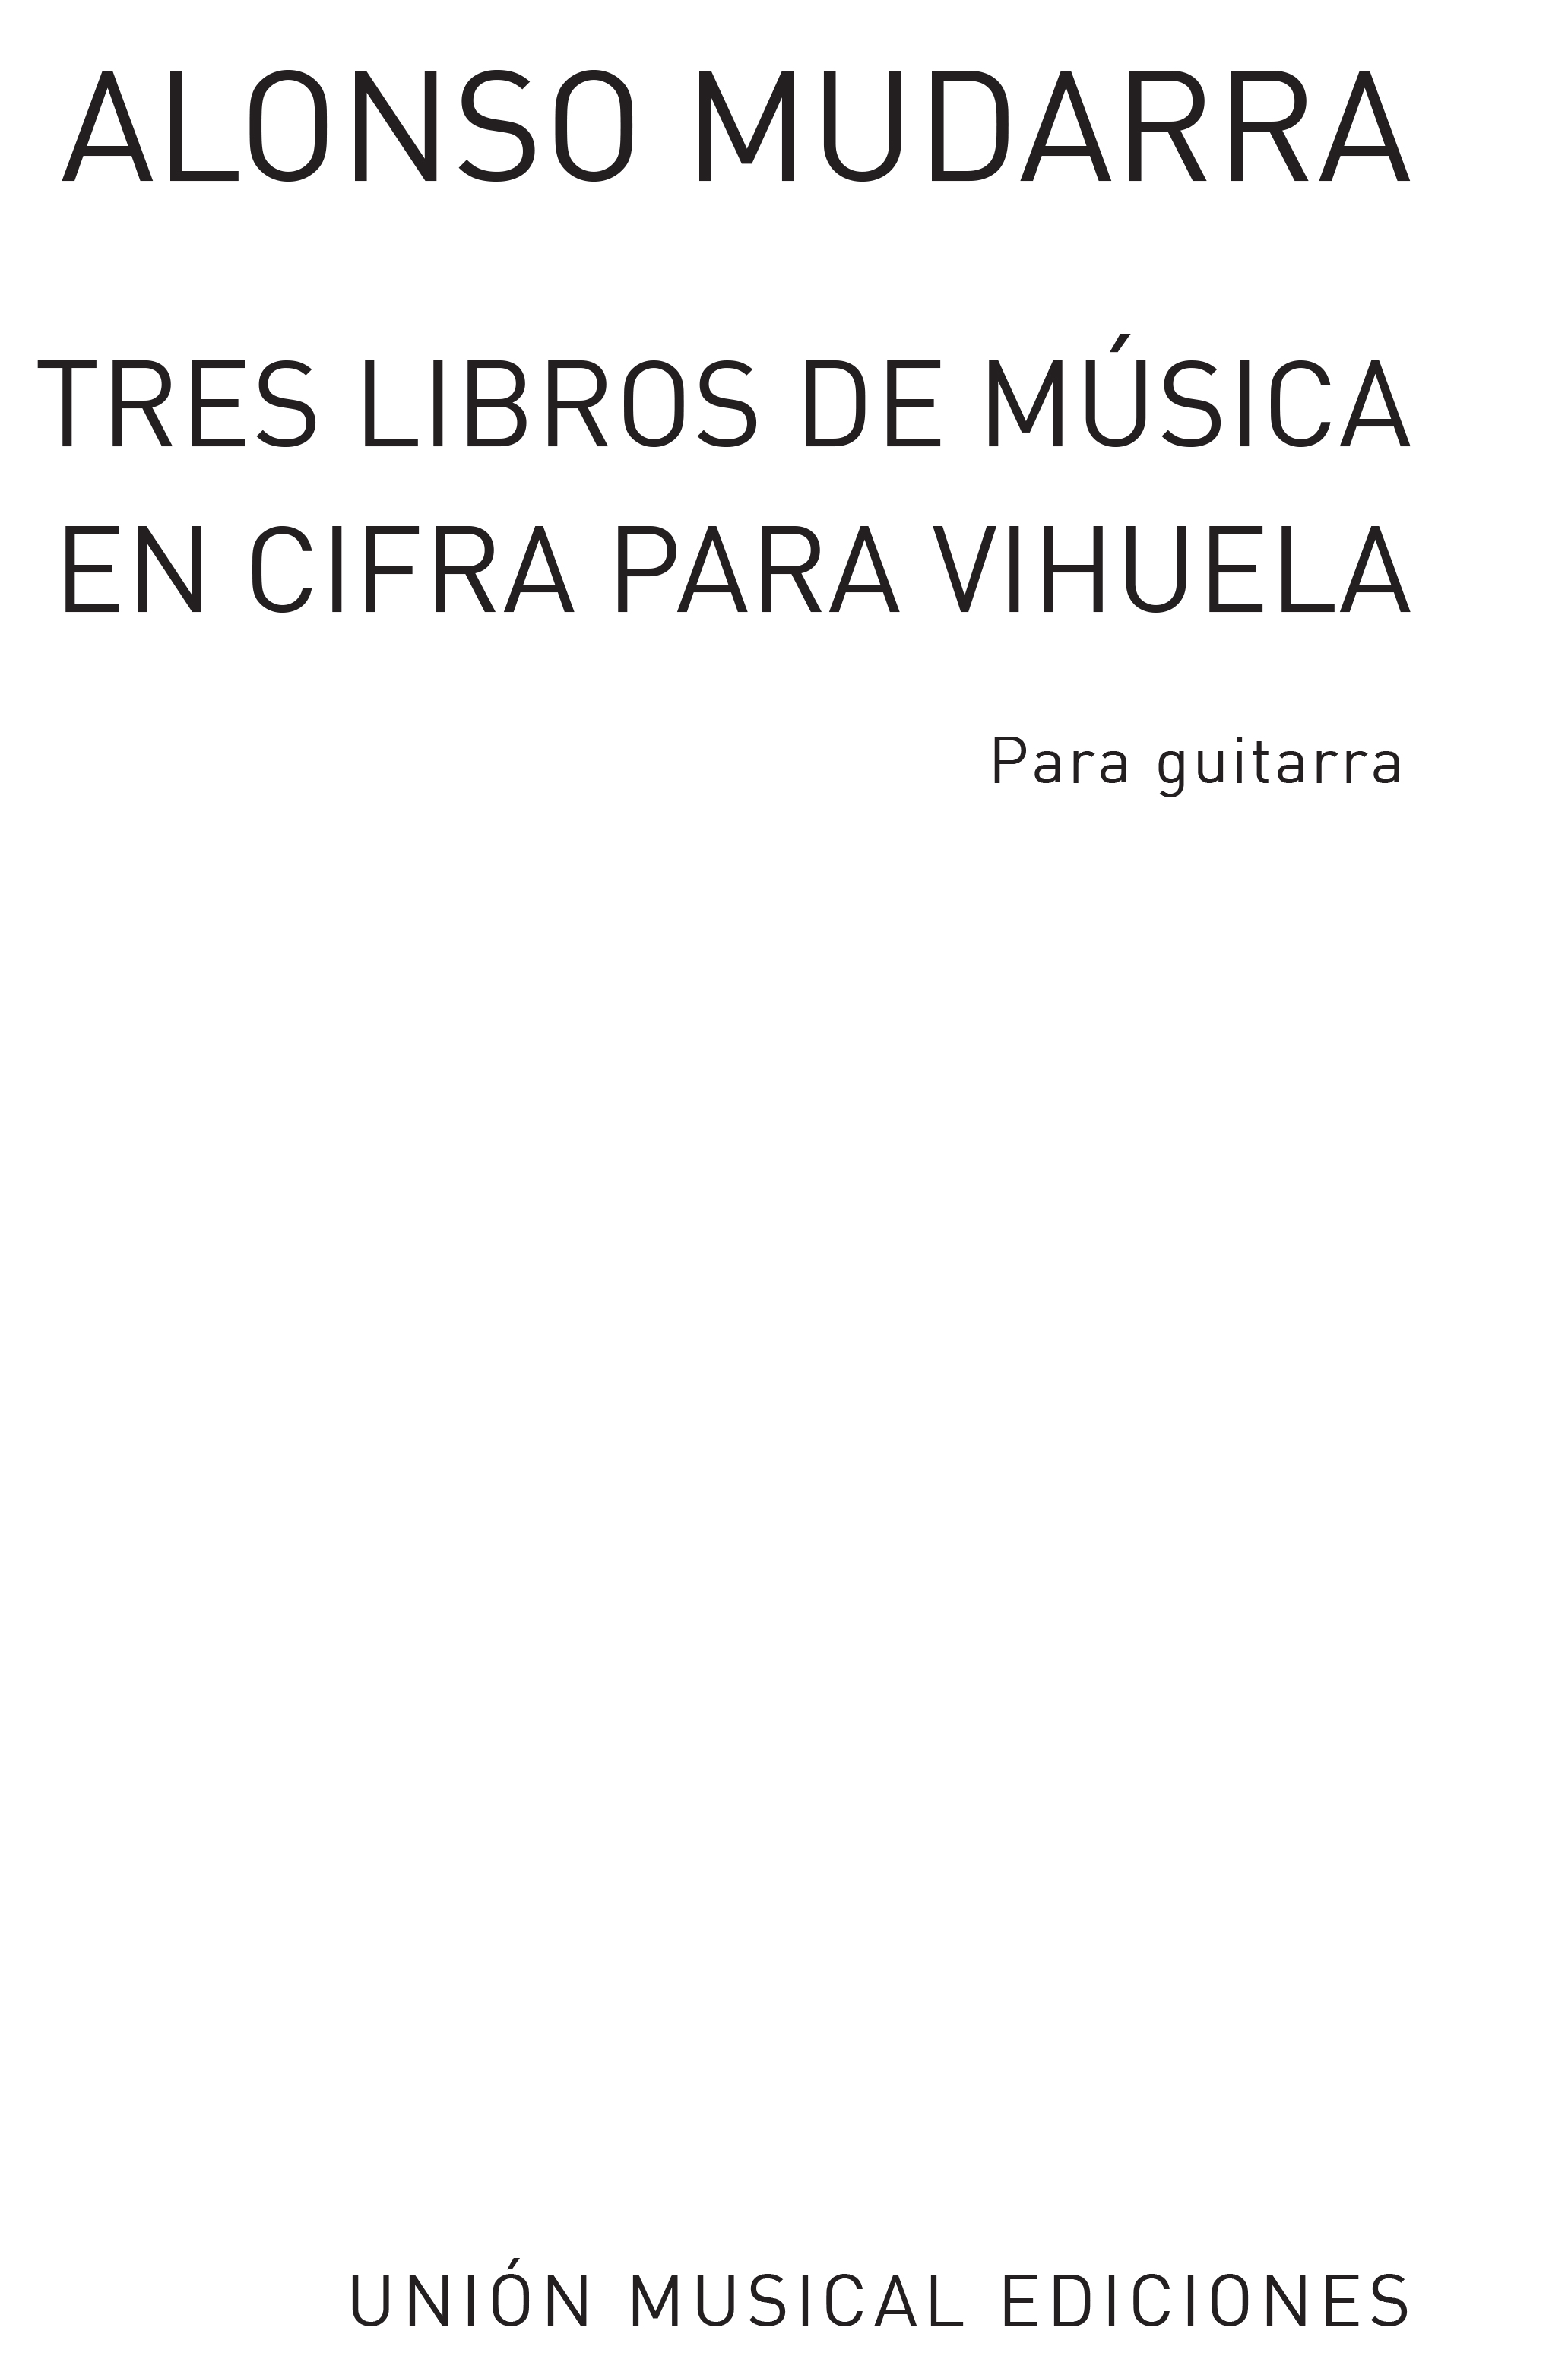 Alonso de Mudarra: Tres Libros De Musica En Cifra Para Vihuela: Guitar: